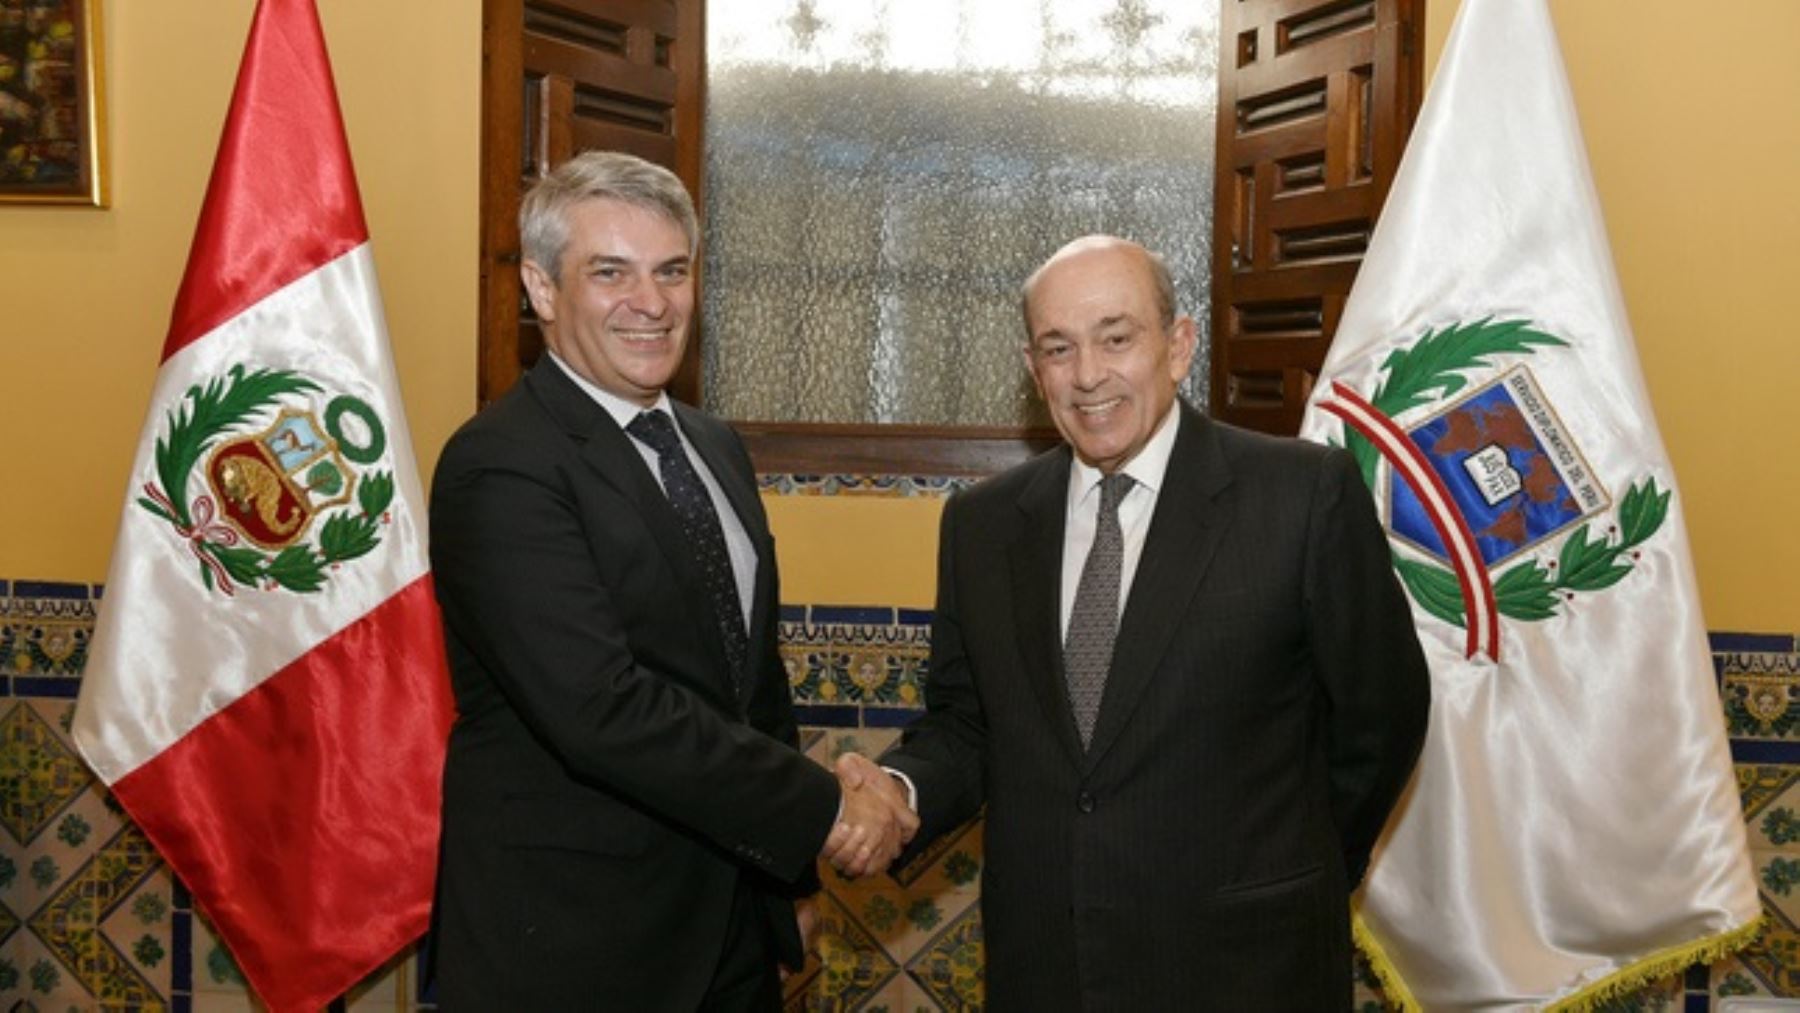 Vicecanciller de Perú, Hugo de Zela; se reunió con su homólogo brasileño Otávio Brandelli.